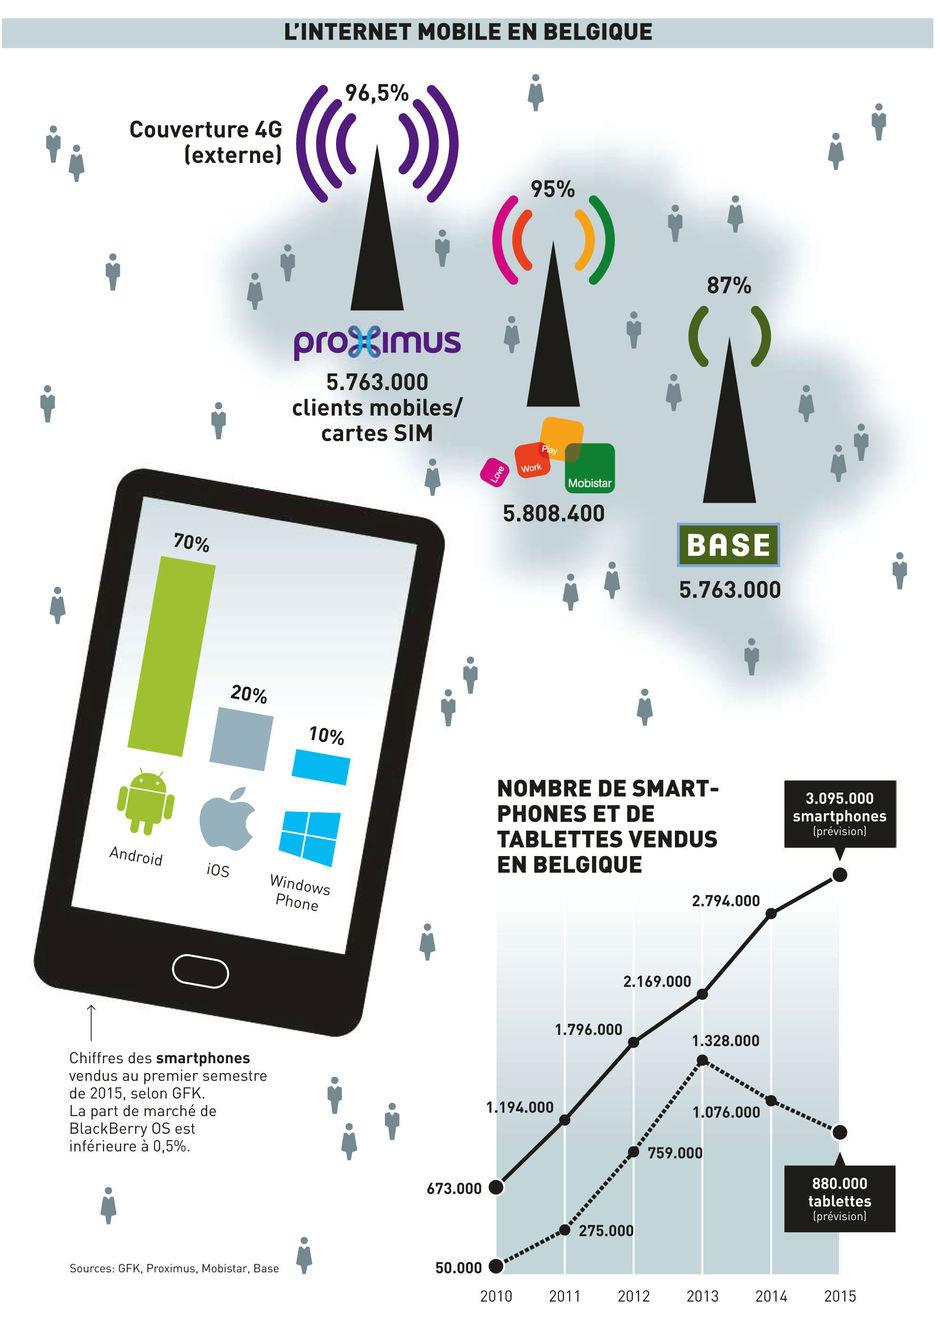 Les Belges achètent trois fois plus d'appareils Android que d'iPhone